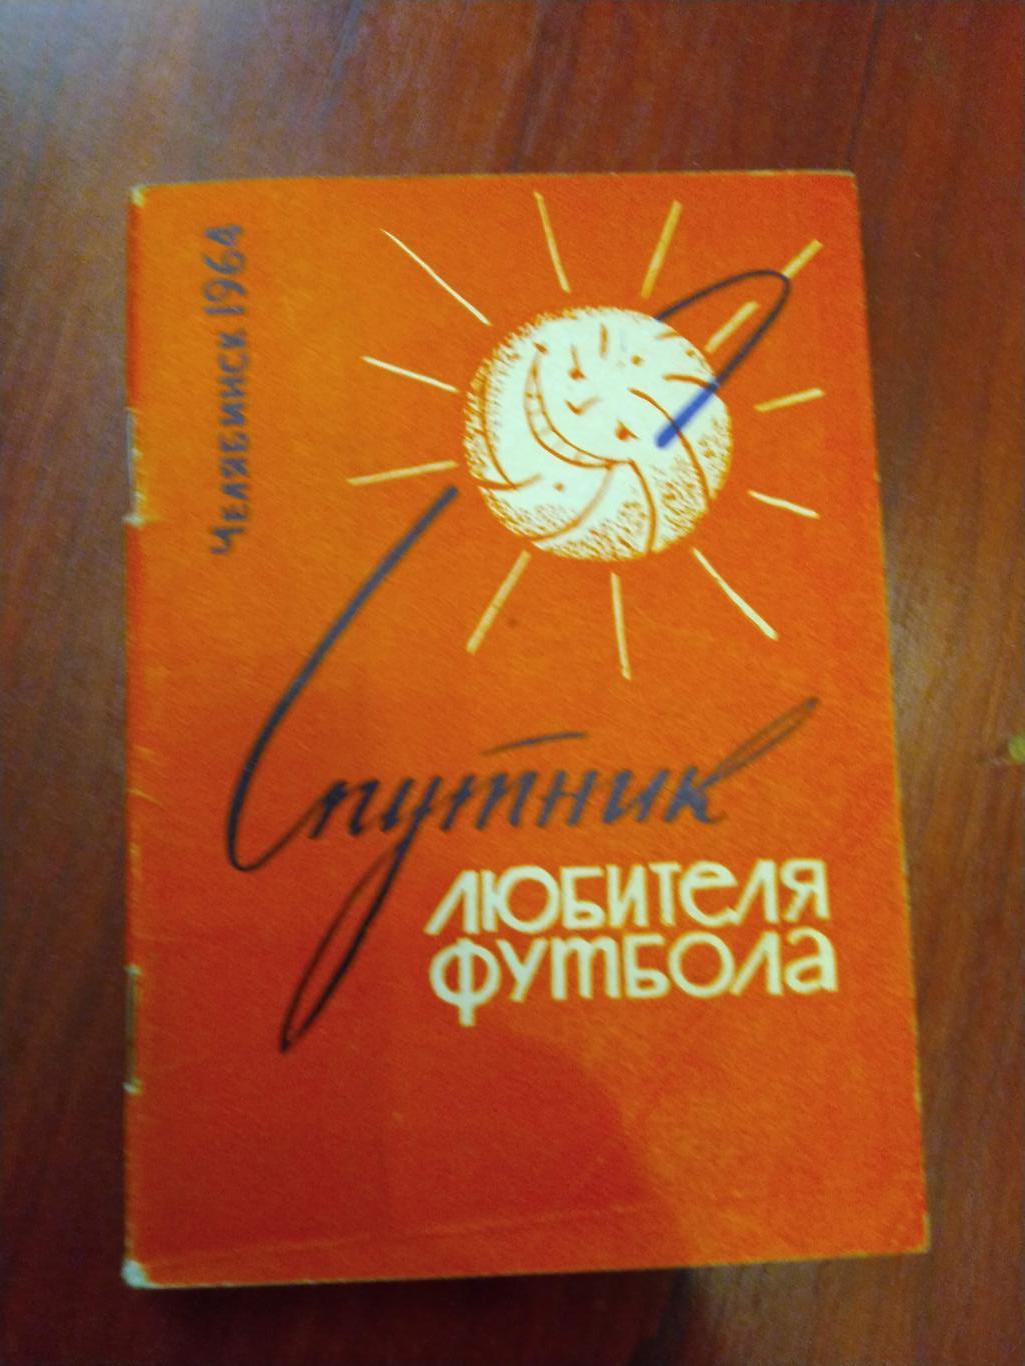 Справочник -календарь Футбол 1964 Челябинск